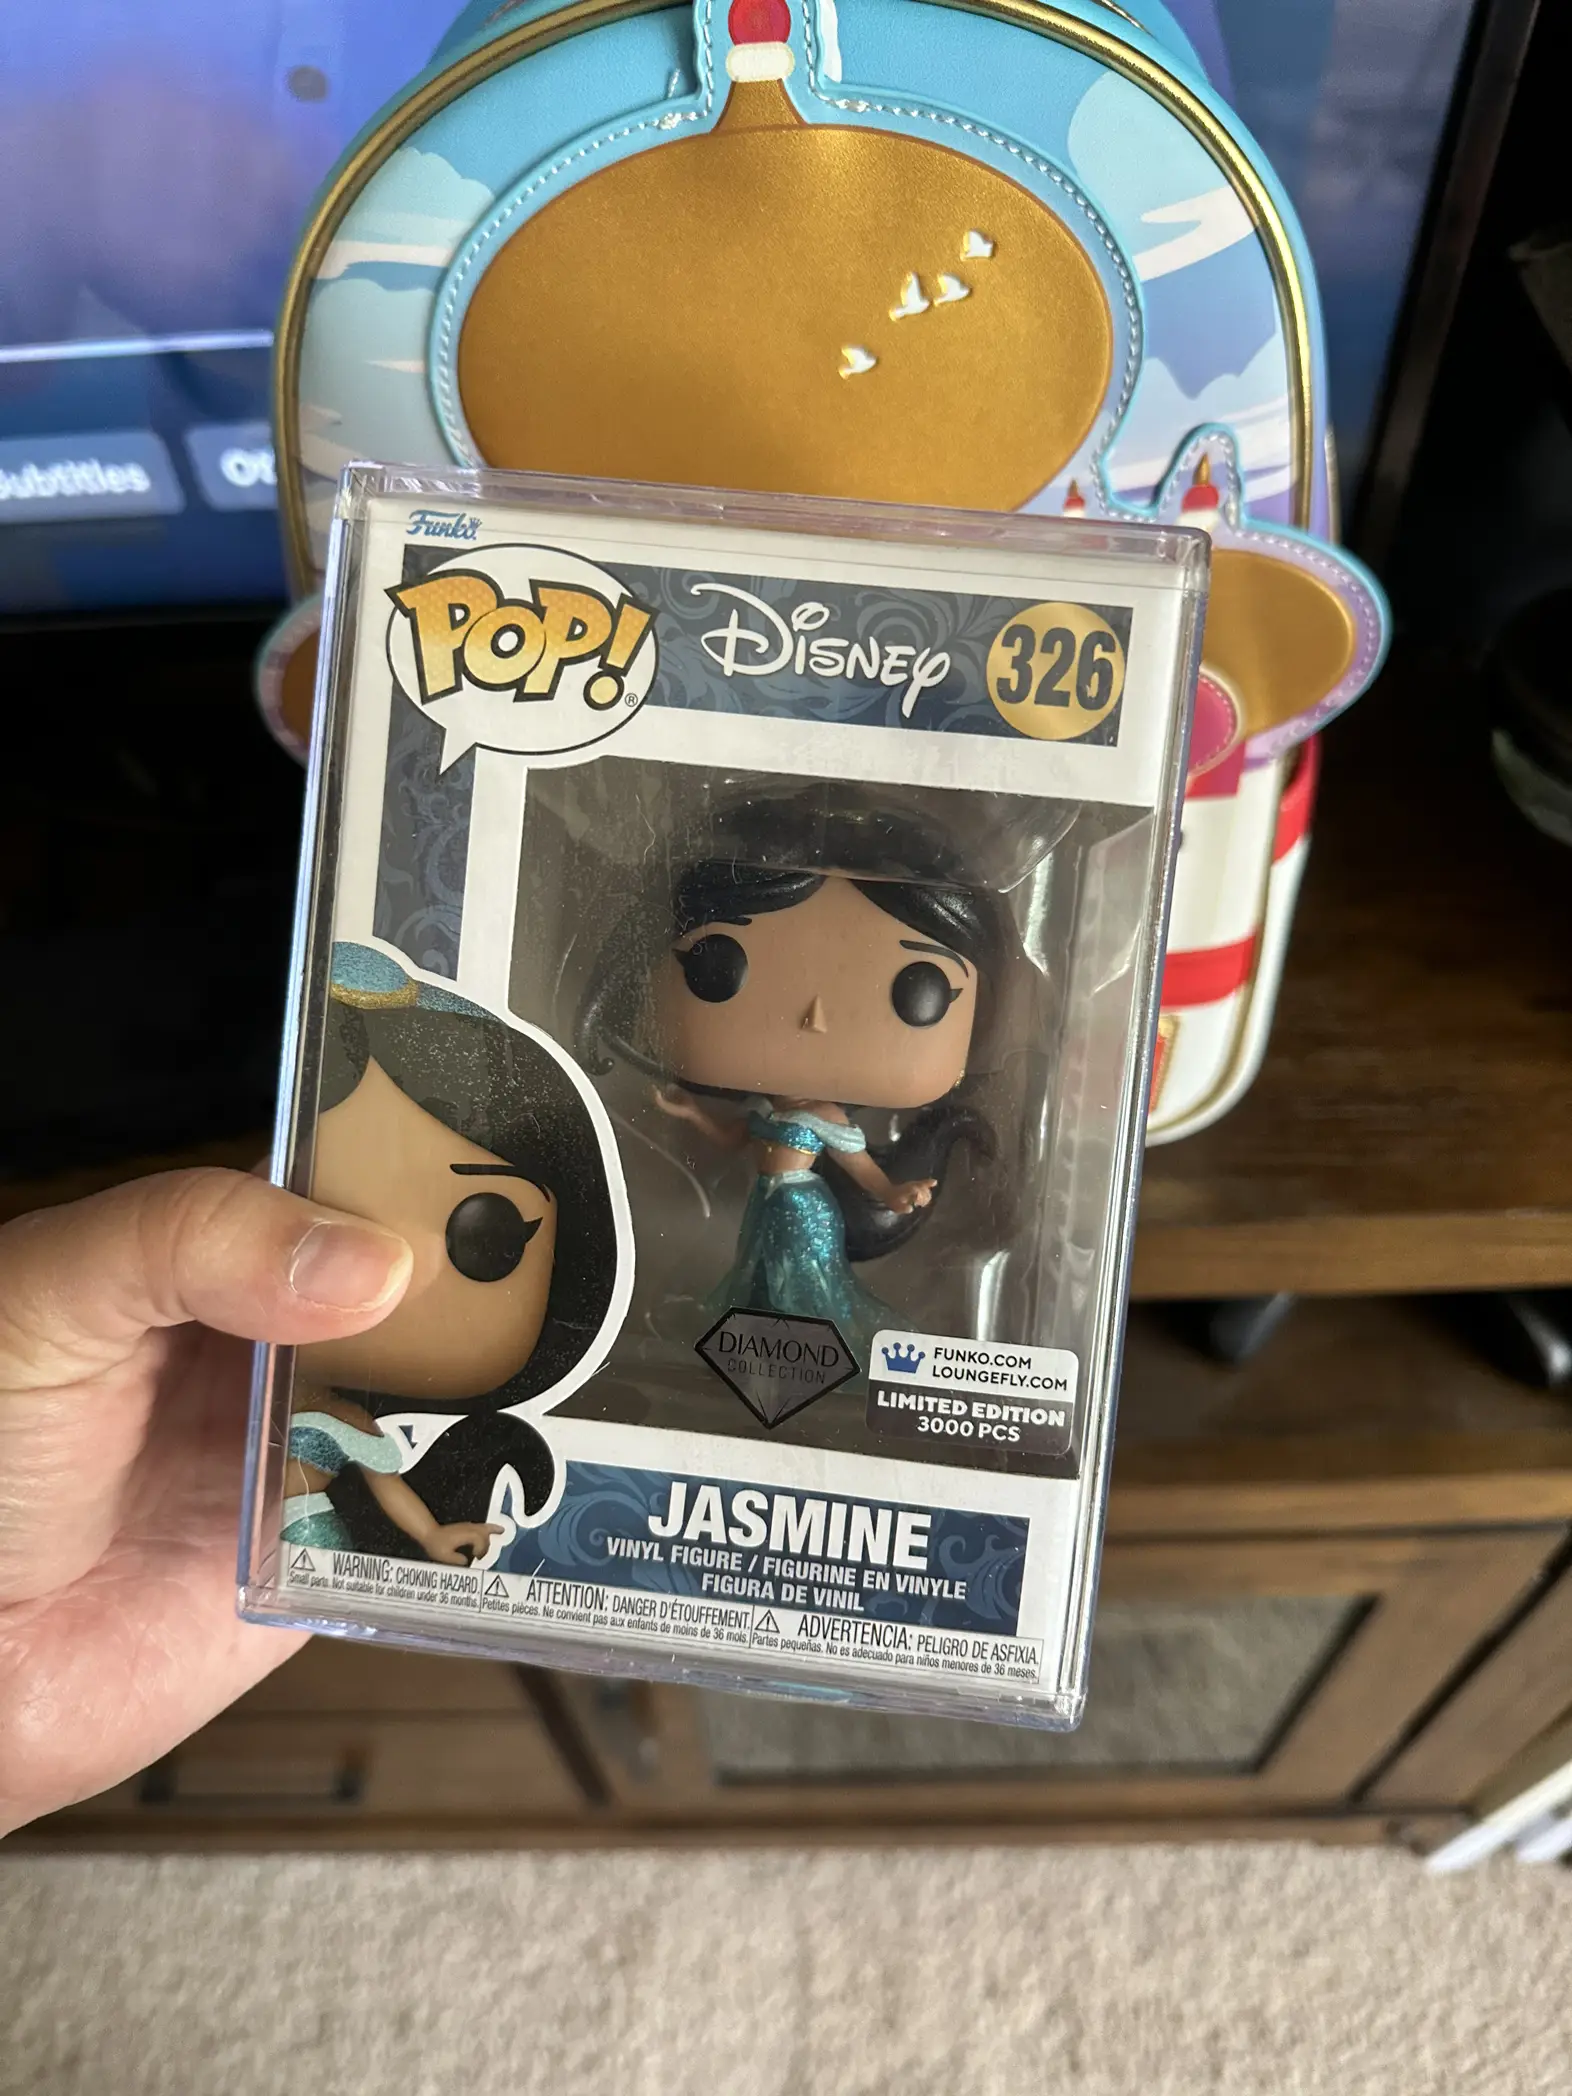 Ultimate Princess - Jasmine - POP! Disney action figure 326